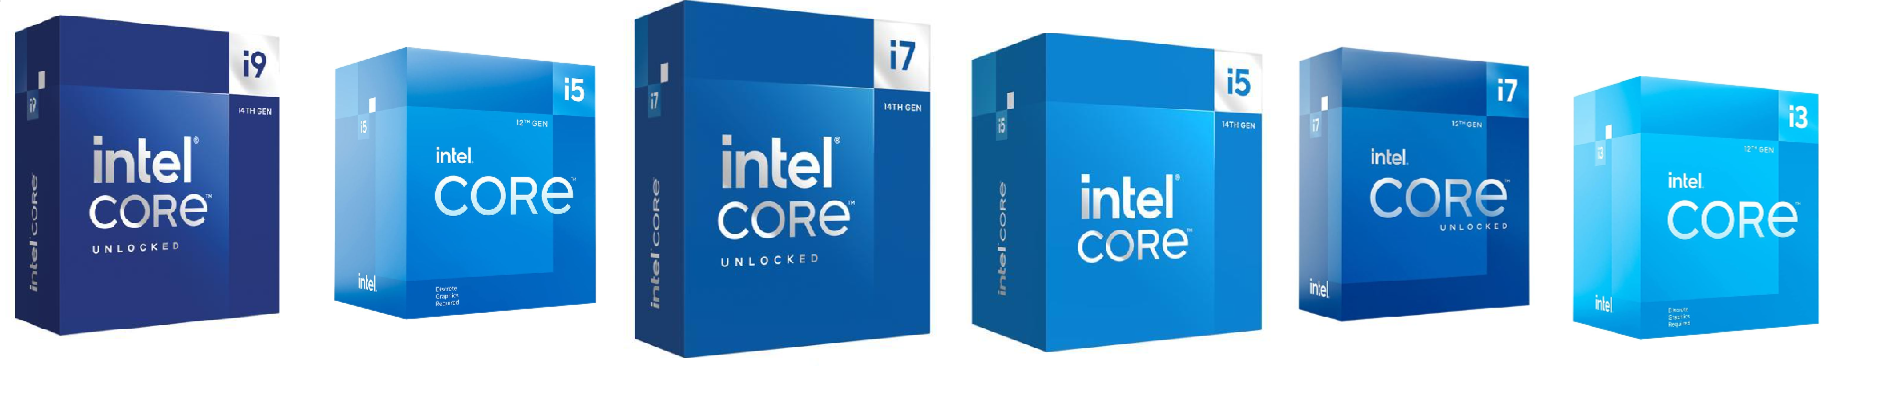 Intel Core boxes